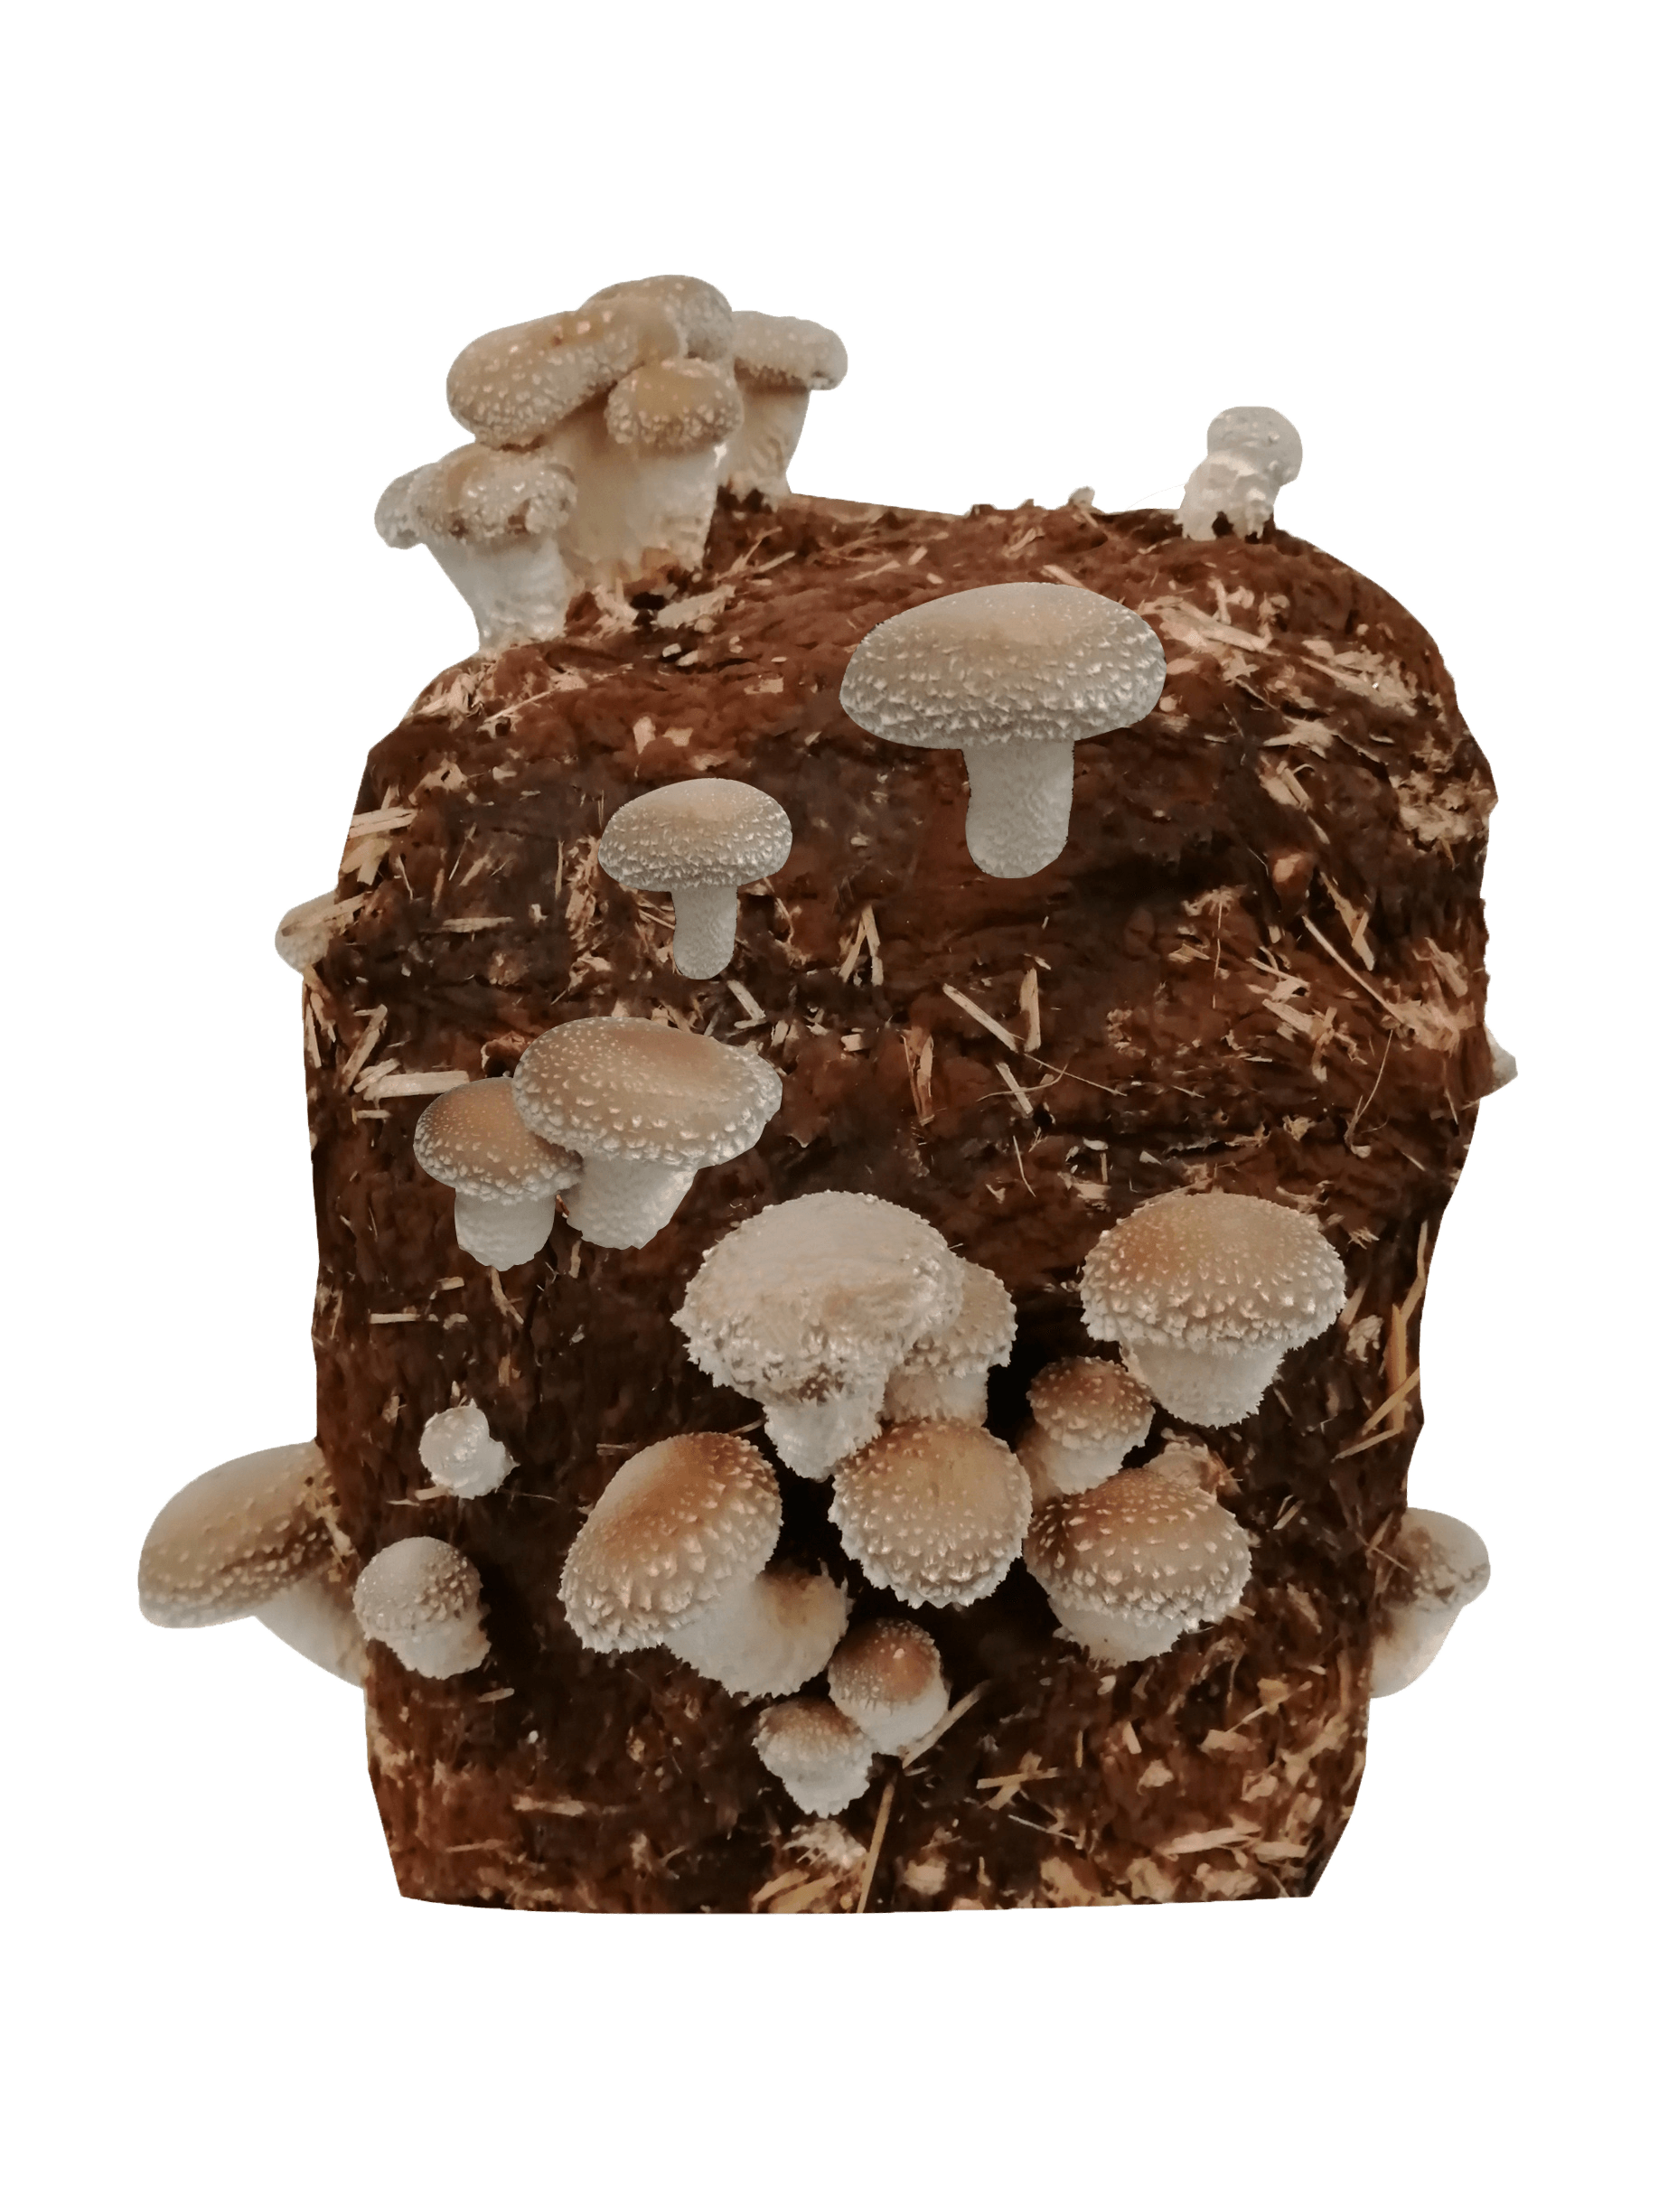 CWYPC Bio Kit Champignon a Faire Pousser, Mycélium de Pleurote Kit